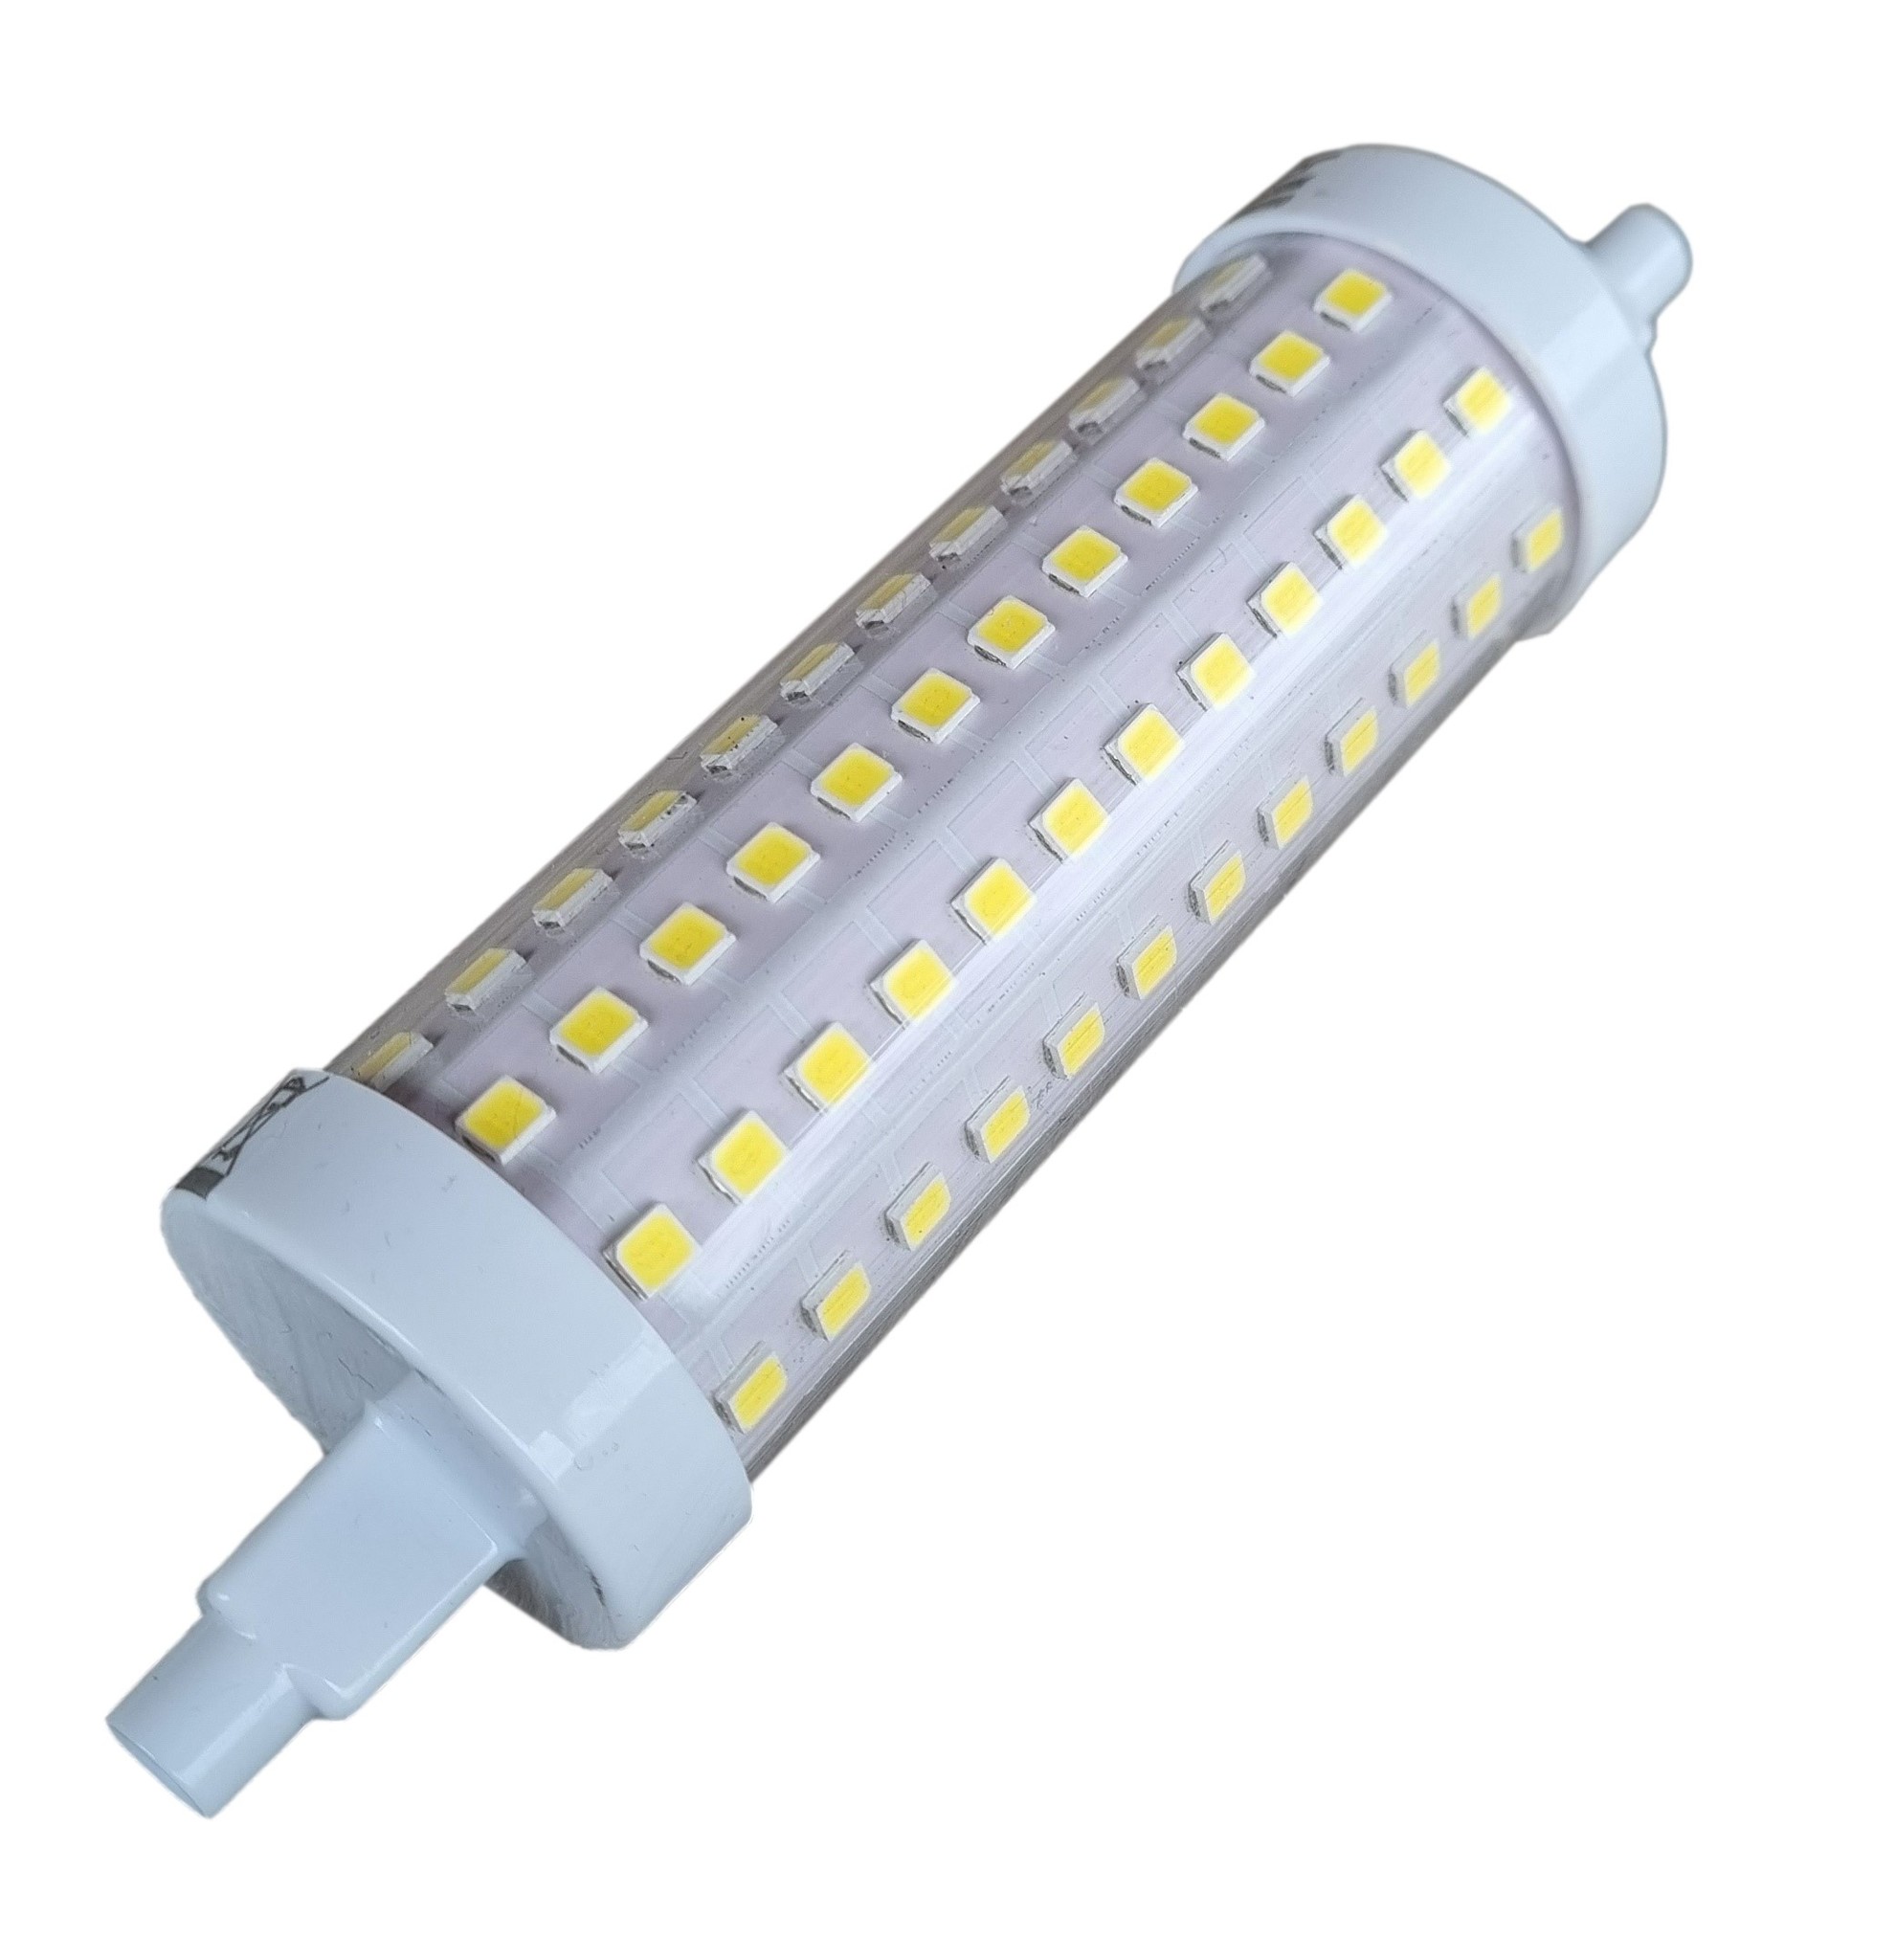 Afsnijden Nodig uit vragenlijst R7s staaflamp | 118x29mm | LED 16W=131W halogeen - 2100 Lumen| daglichtwit  6500K